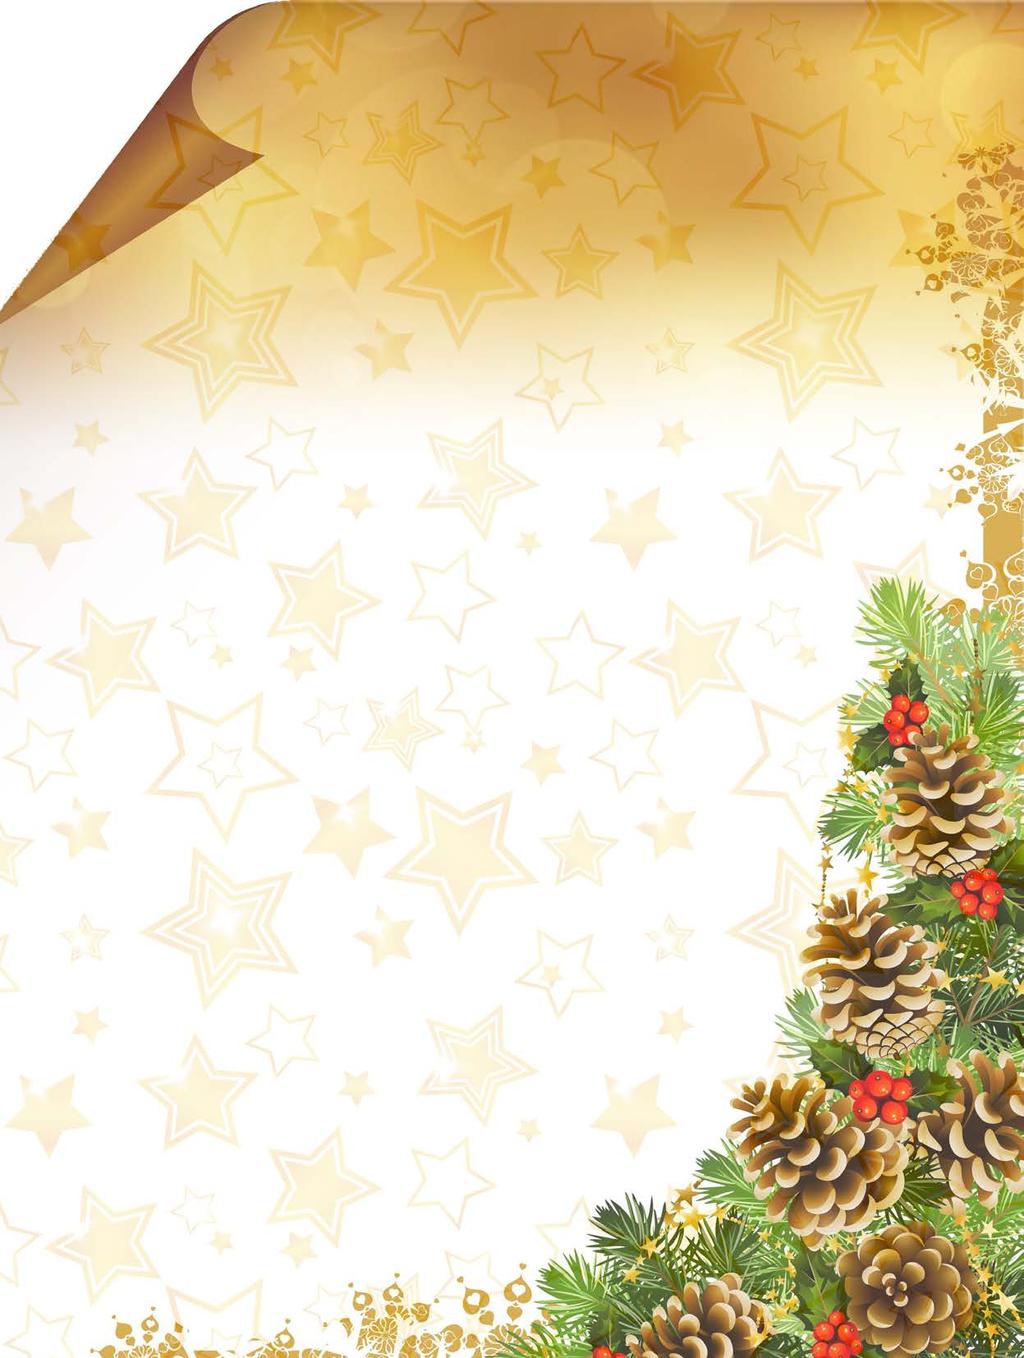 VOORZORG INFO 33 DECEMBER 2014 8 De persoonlijke kerstwensen van de bestuurs leden van Stichting Overleg Huurders Verhuurder Woningstichting De Voorzorg (het Overlegorgaan) Kerstmis is het feest van